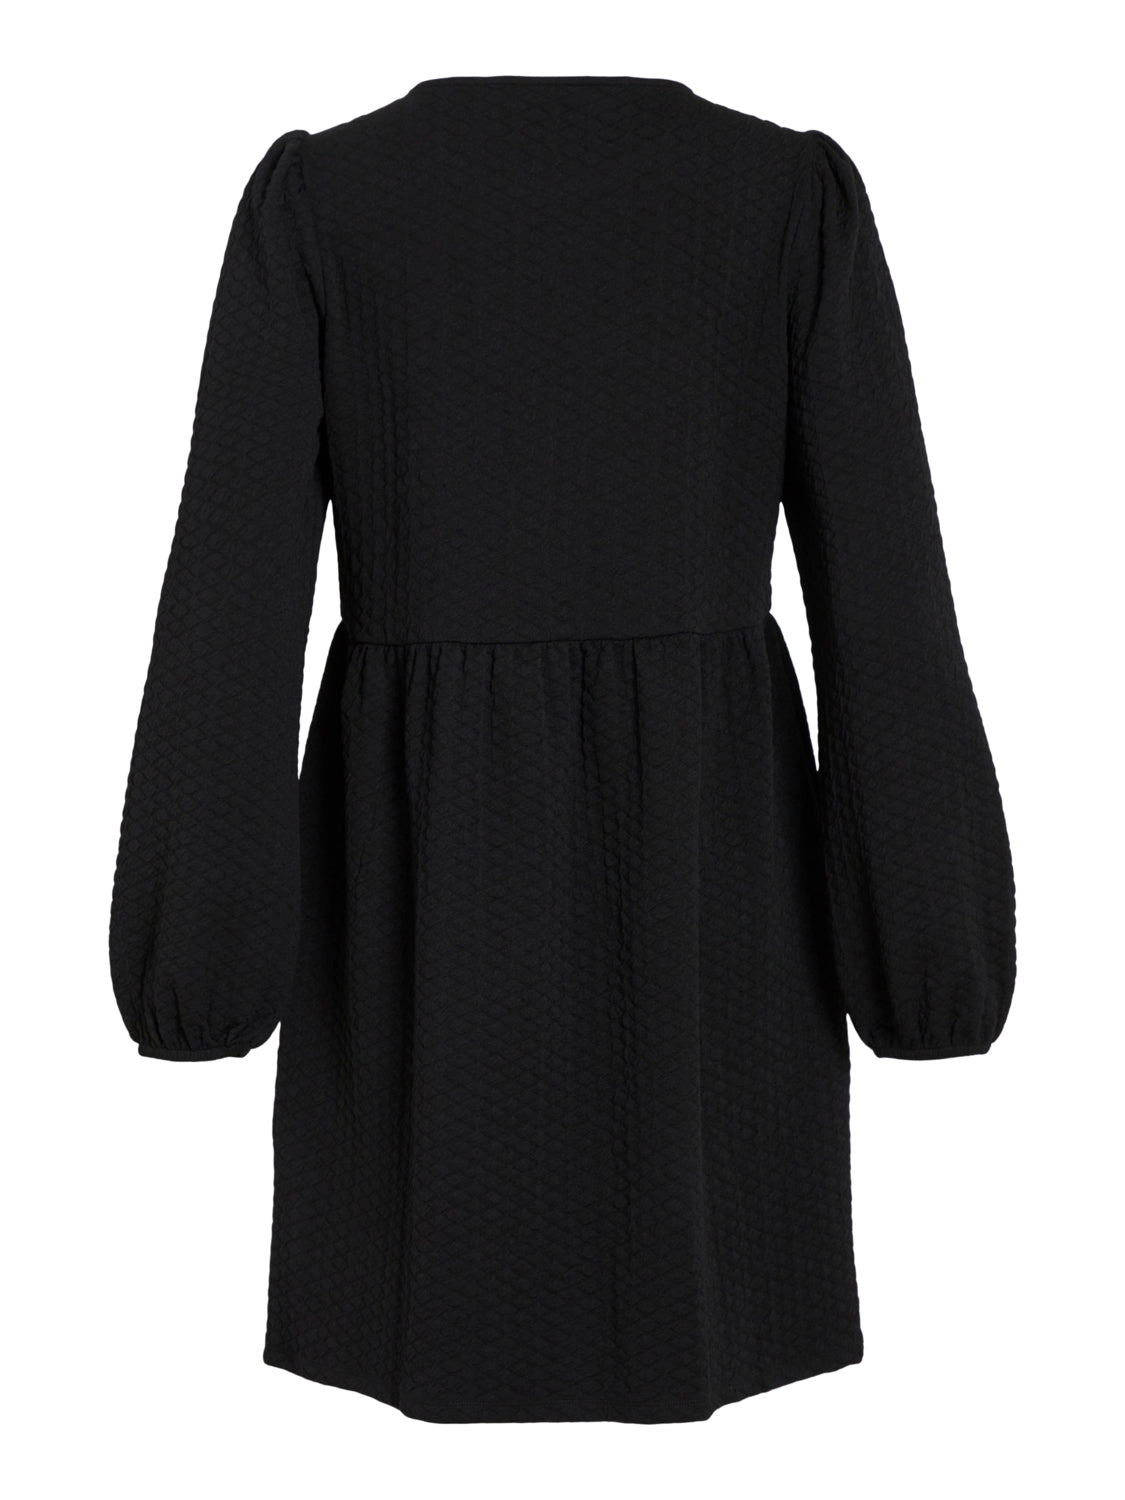 VISTRUCTIA Dress - Black